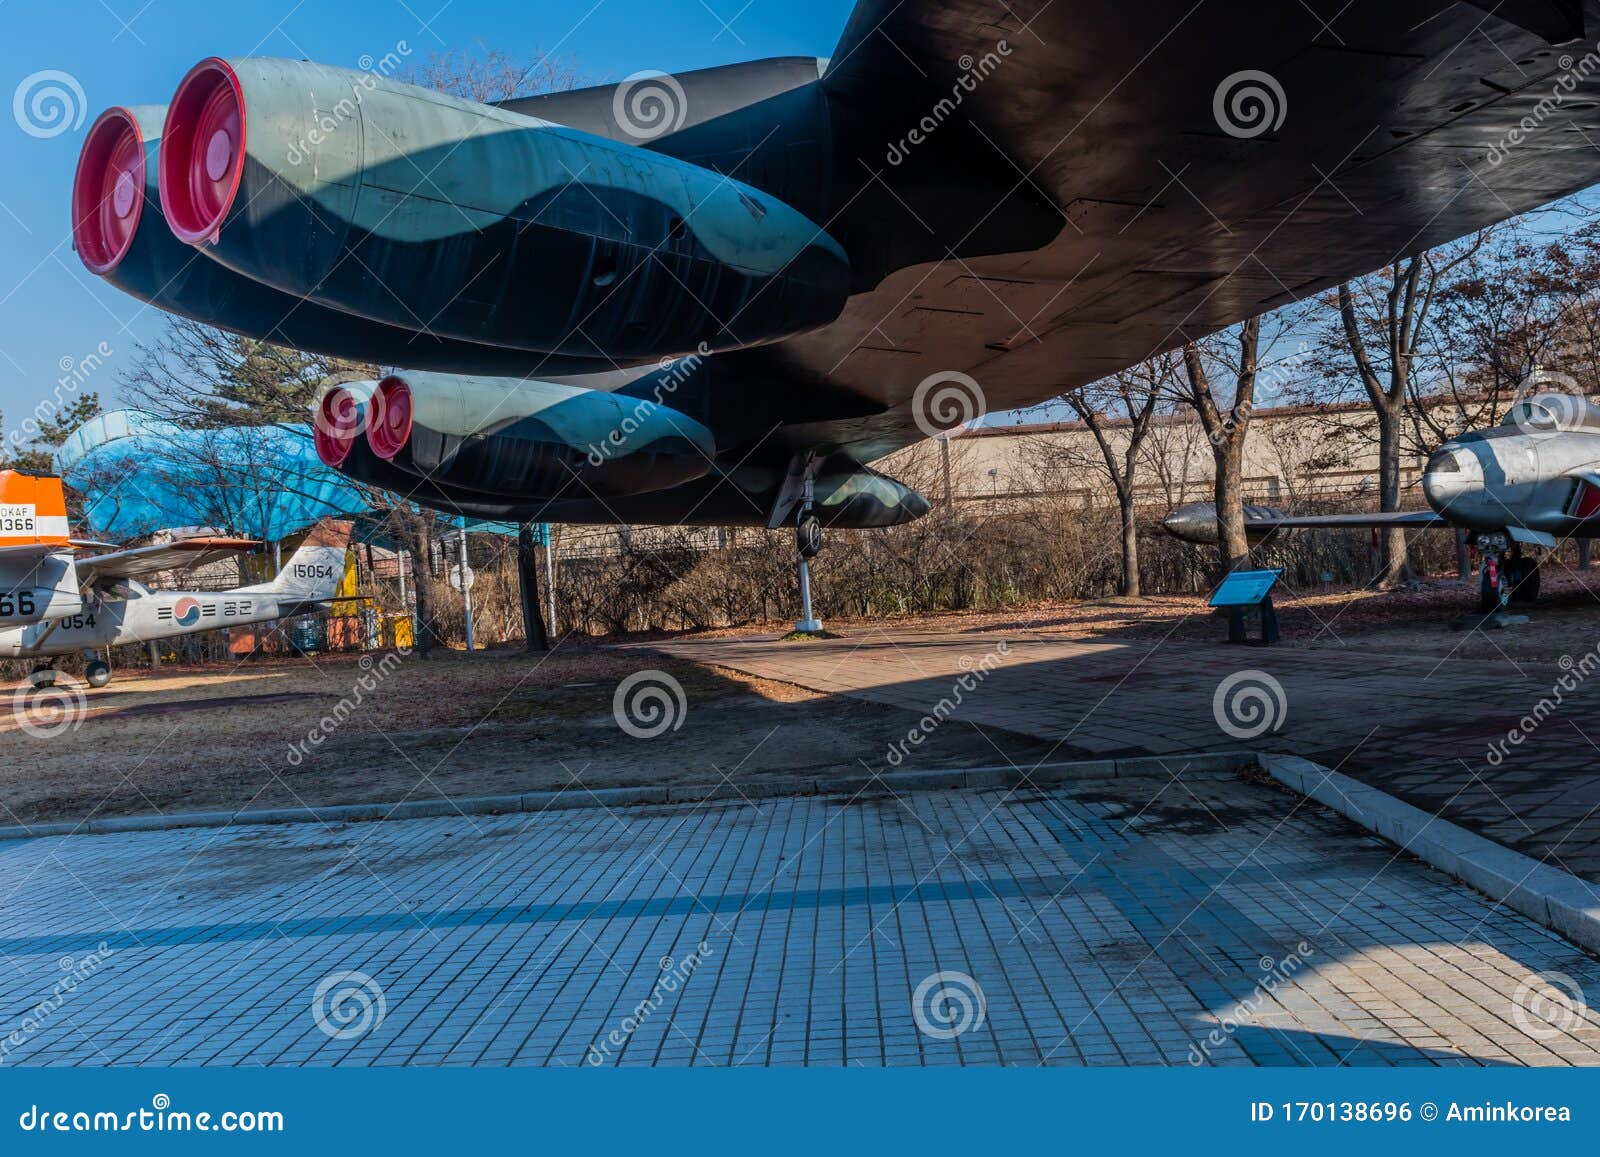 B-52轰炸机上的喷气发动机. 韩国首尔；2020年1月10日：B-52轰炸机机翼侧视朝鲜战争纪念馆